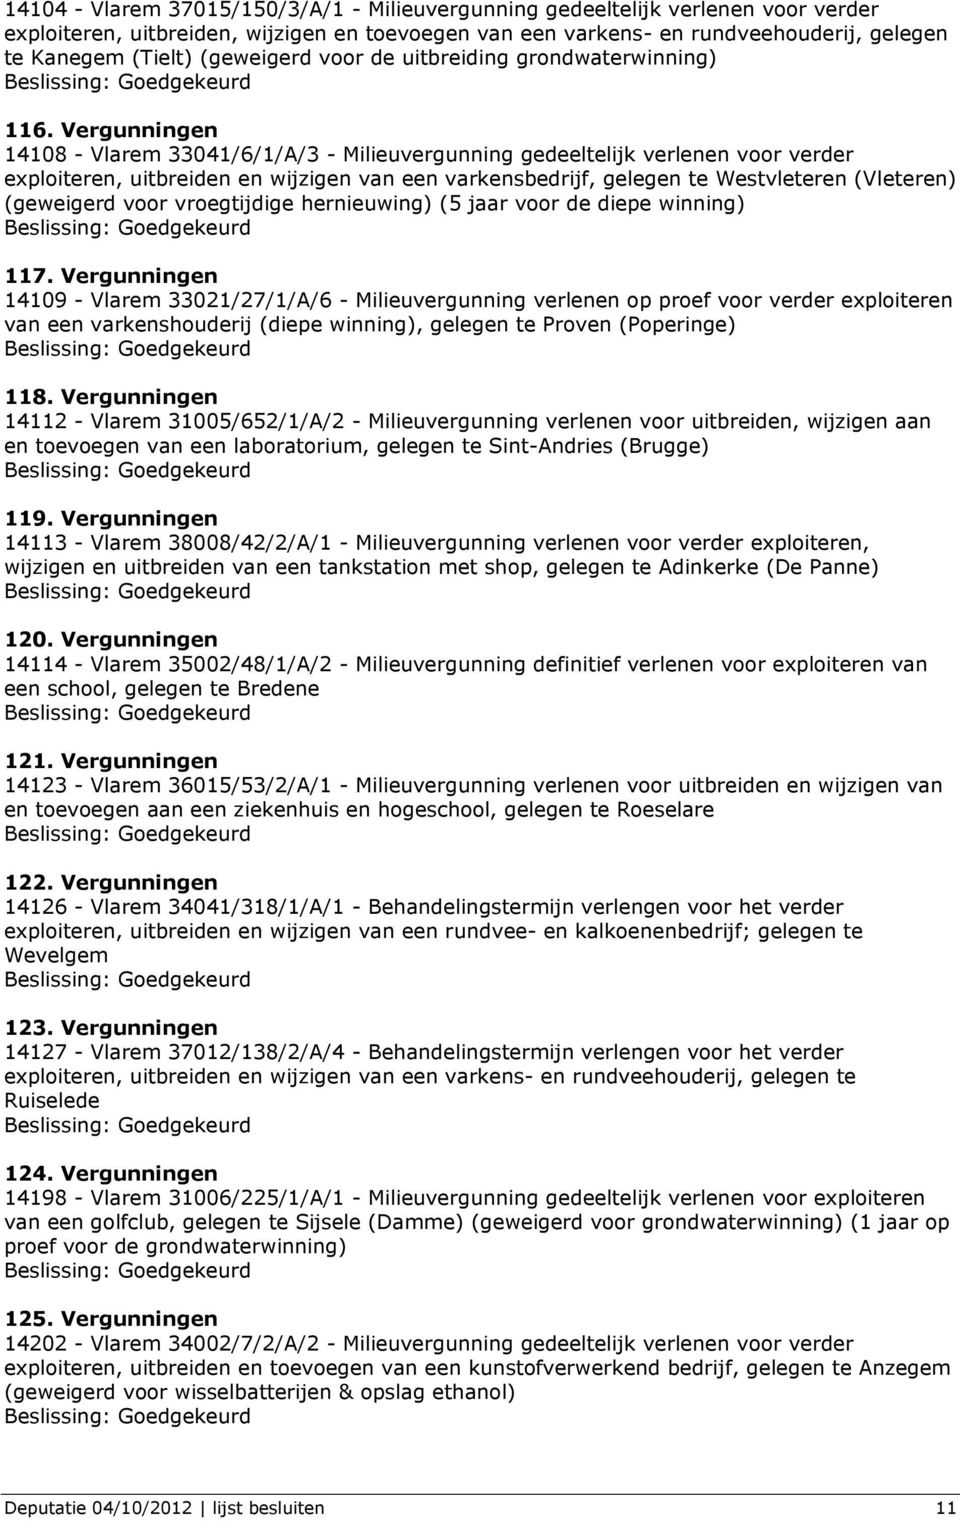 Vergunningen 14108 - Vlarem 33041/6/1/A/3 - Milieuvergunning gedeeltelijk verlenen voor verder exploiteren, uitbreiden en wijzigen van een varkensbedrijf, gelegen te Westvleteren (Vleteren)